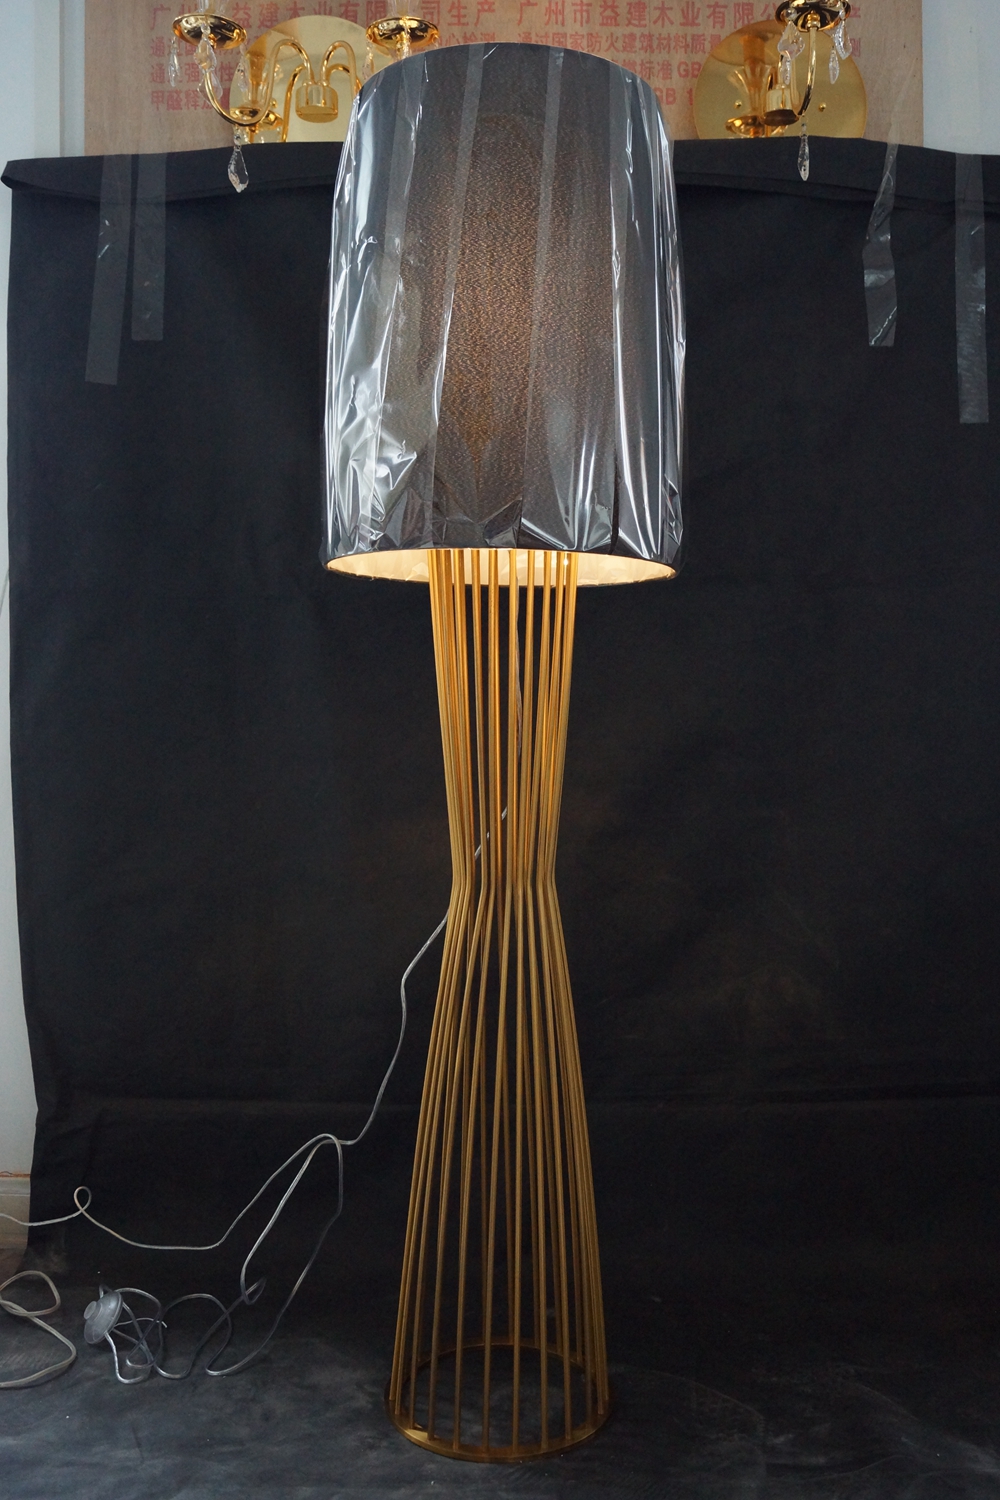 Modern Stainless Steel Studio Floor Lamp (KAF6030)